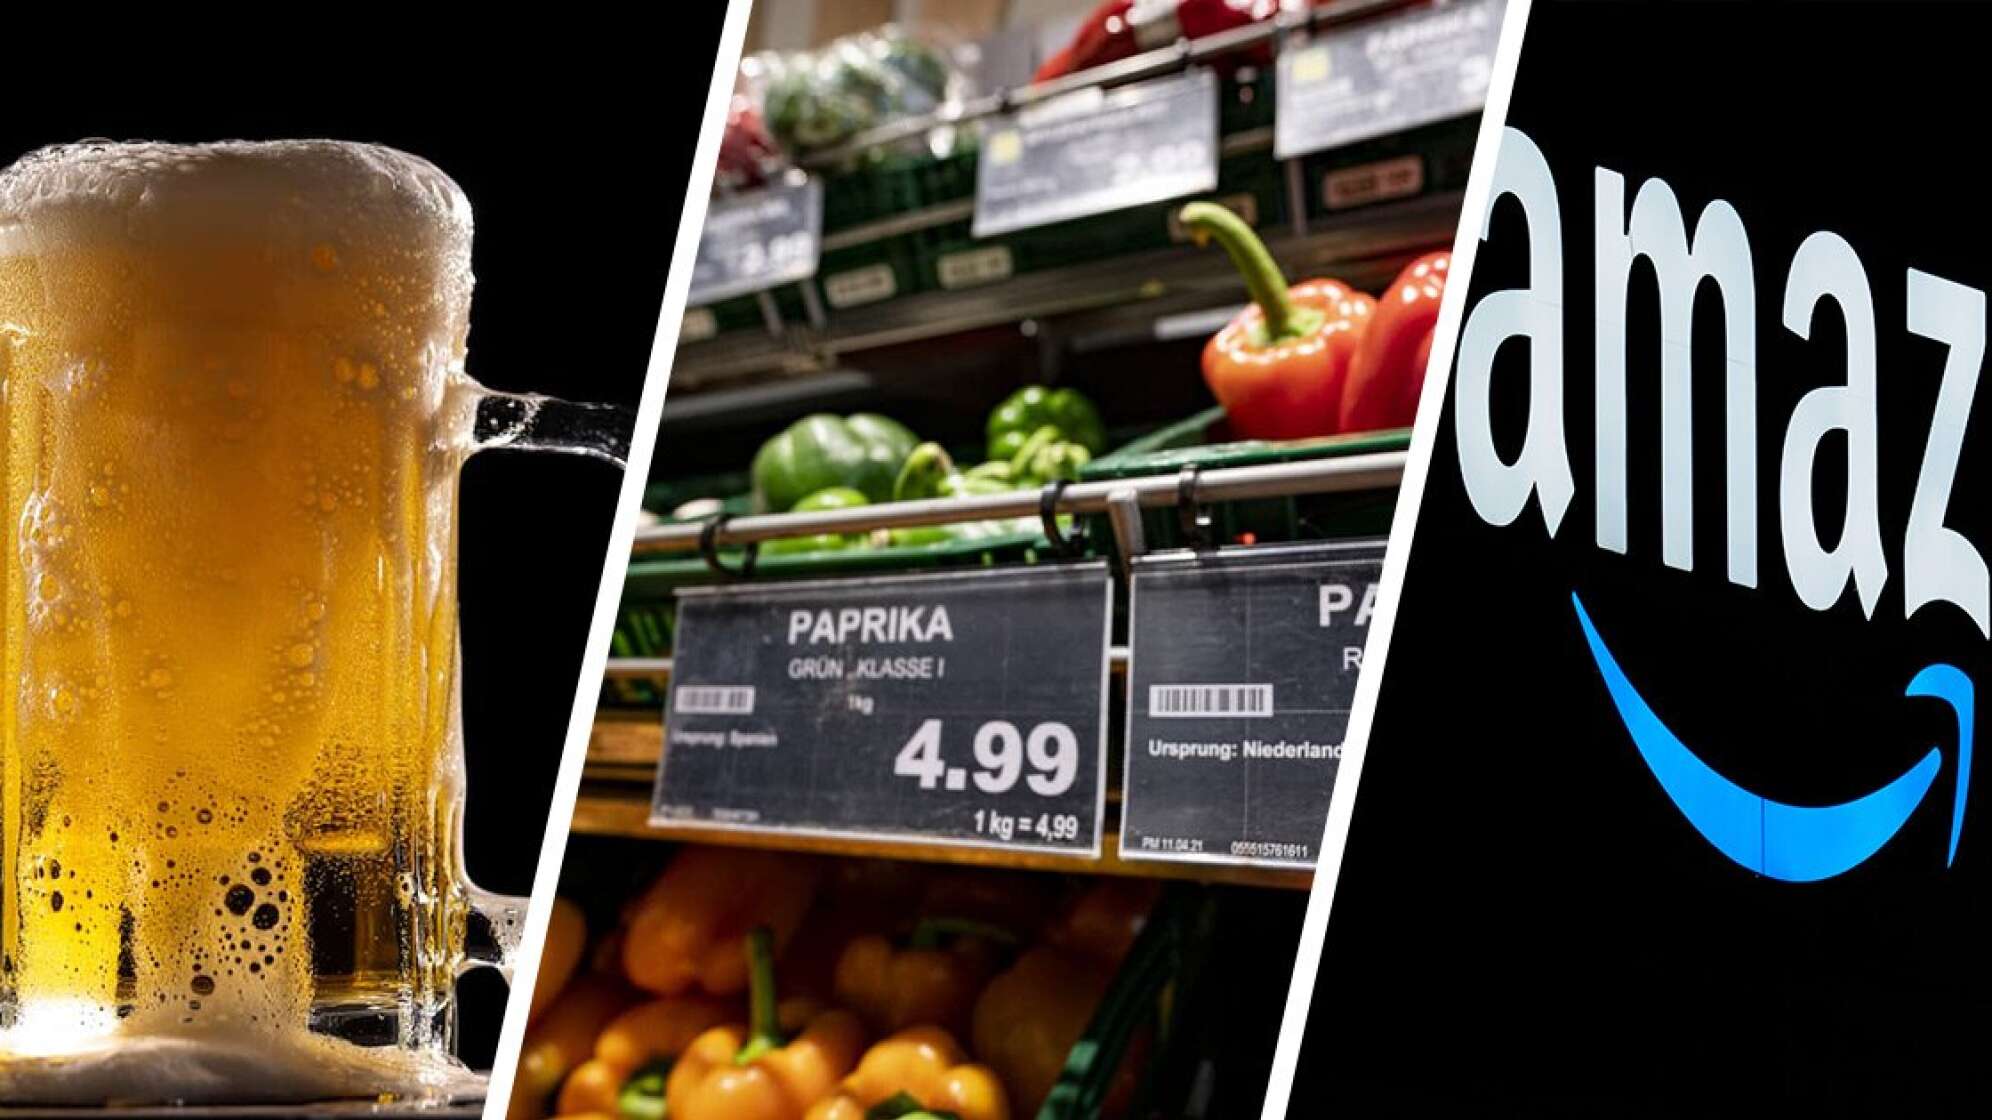 Bier, Gemüse im Supermarkt, Amazon-Logo